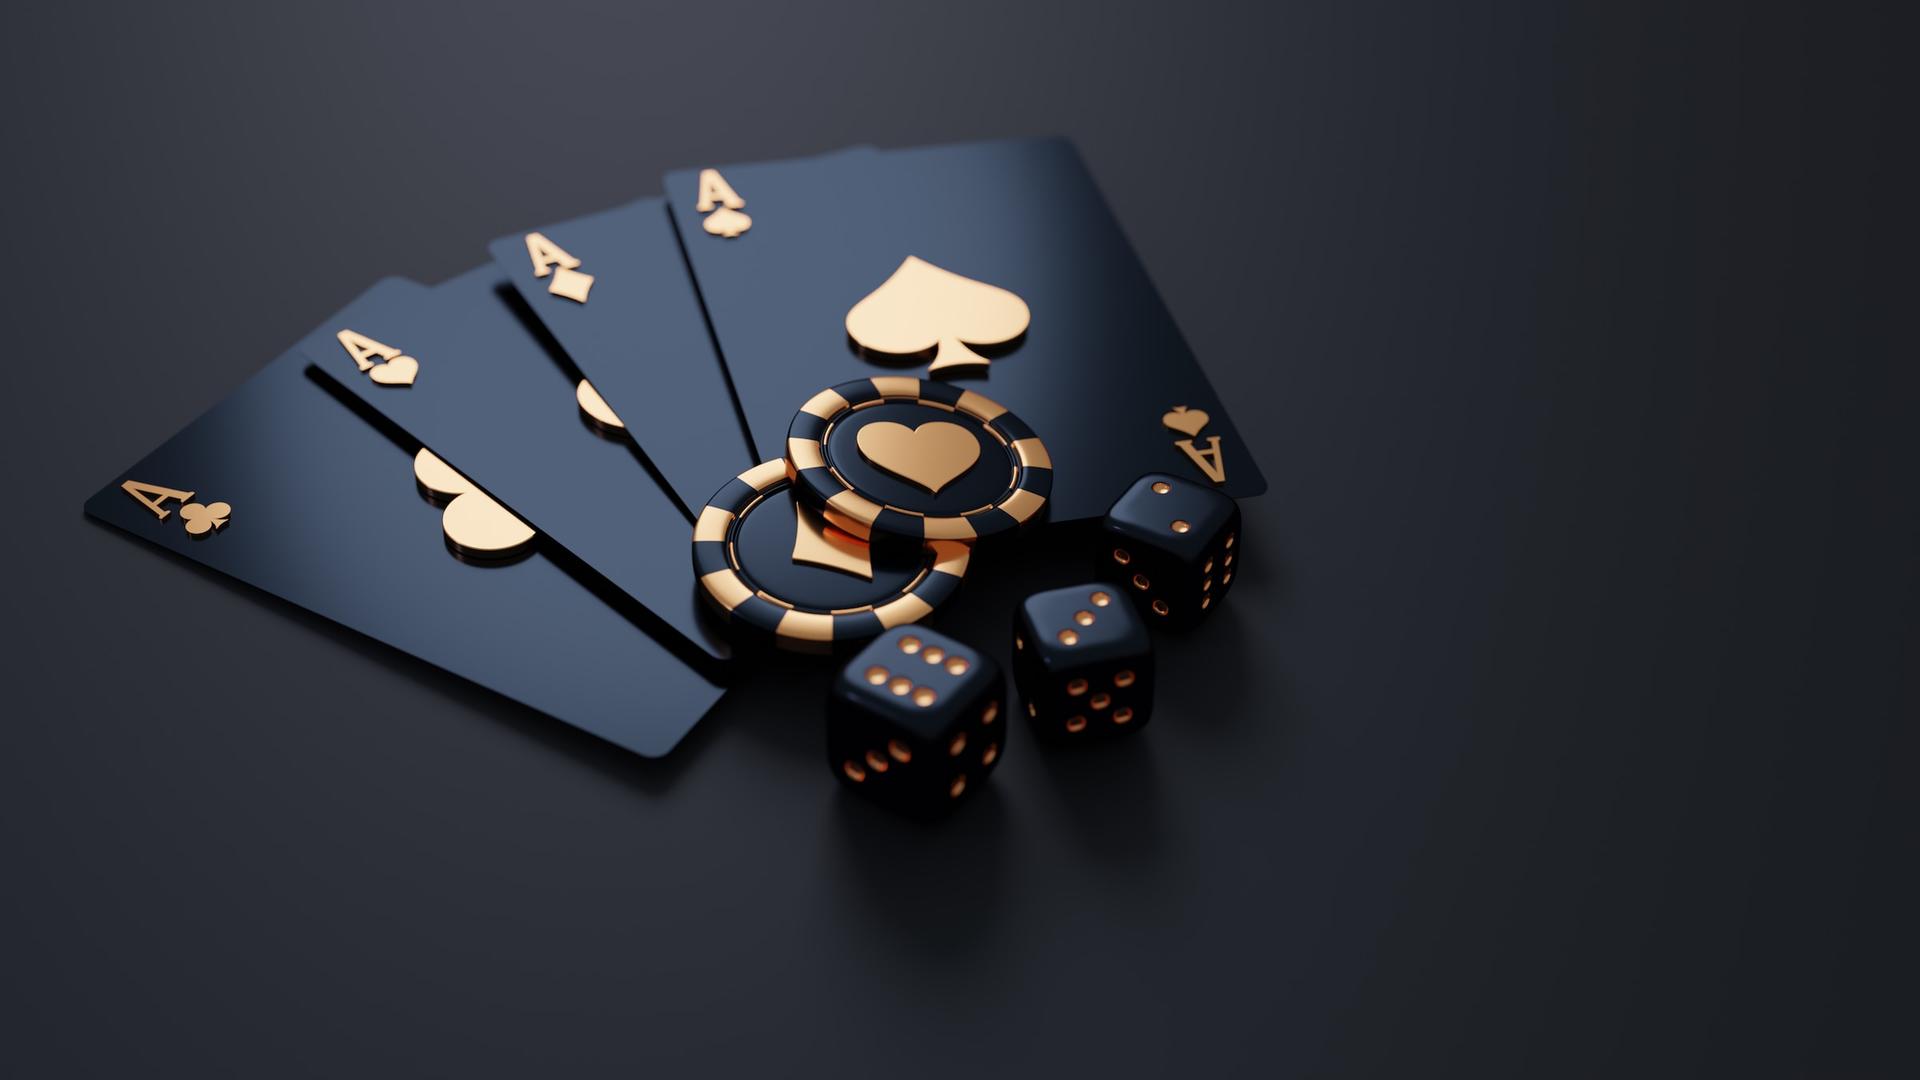 Edle schwarz-goldene Spielkarten (Asse), Spielchips und Würfel vor einem schwarzen Hintergrund